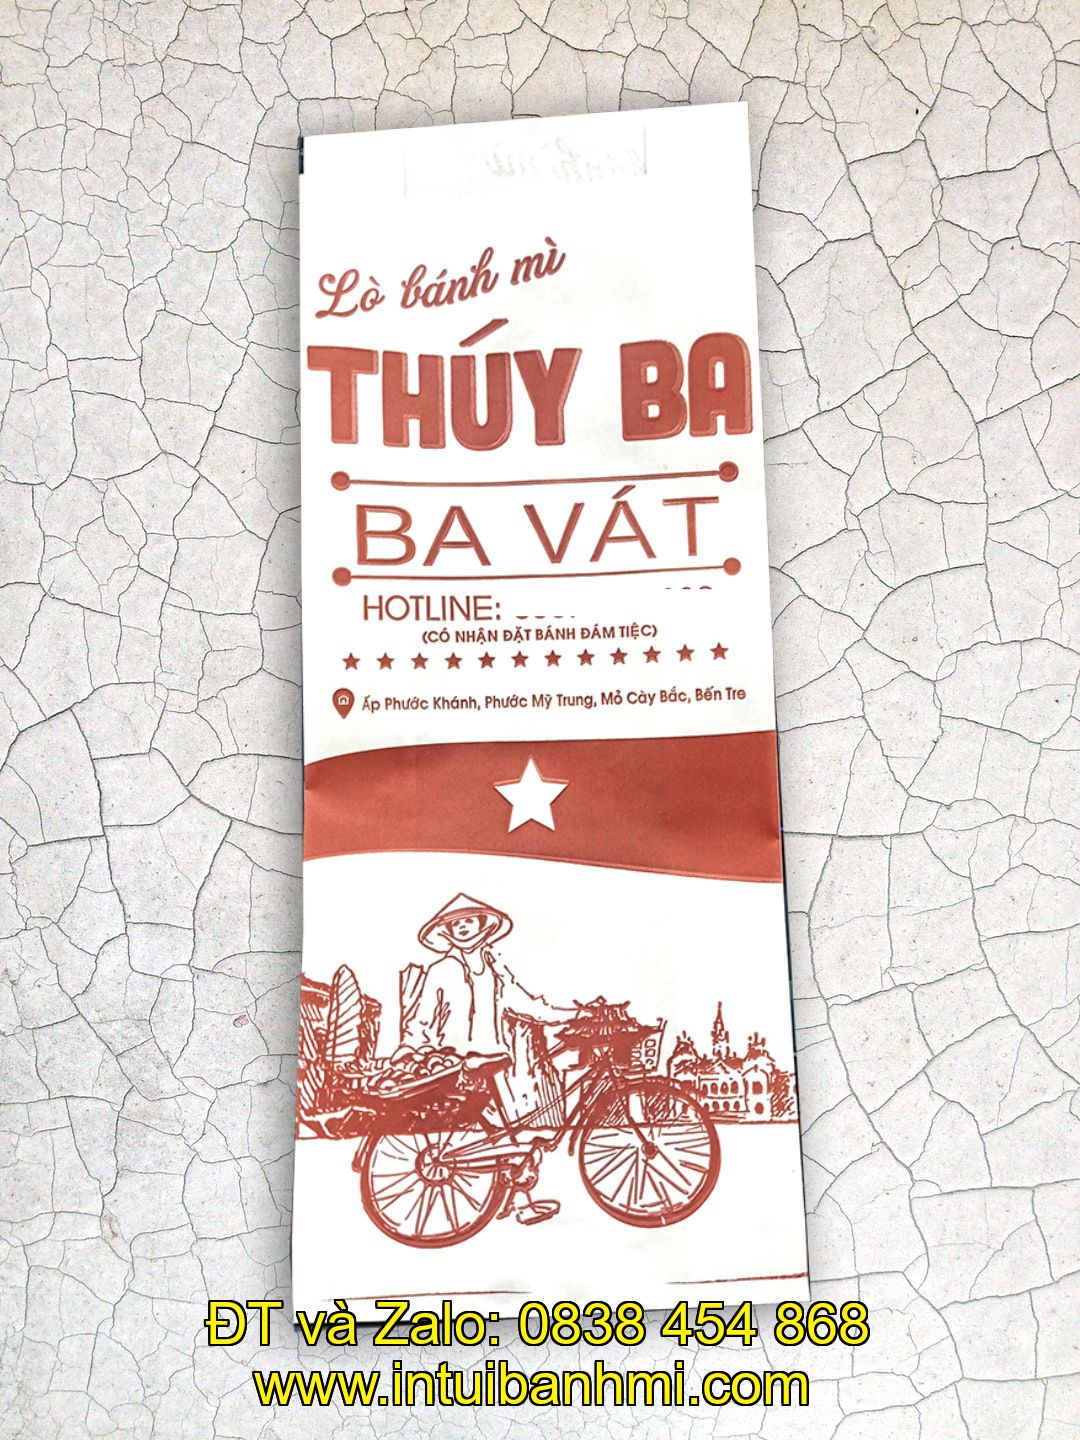 Nơi in ấn túi bánh mì đảm bảo vệ sinh tại Tiền Giang